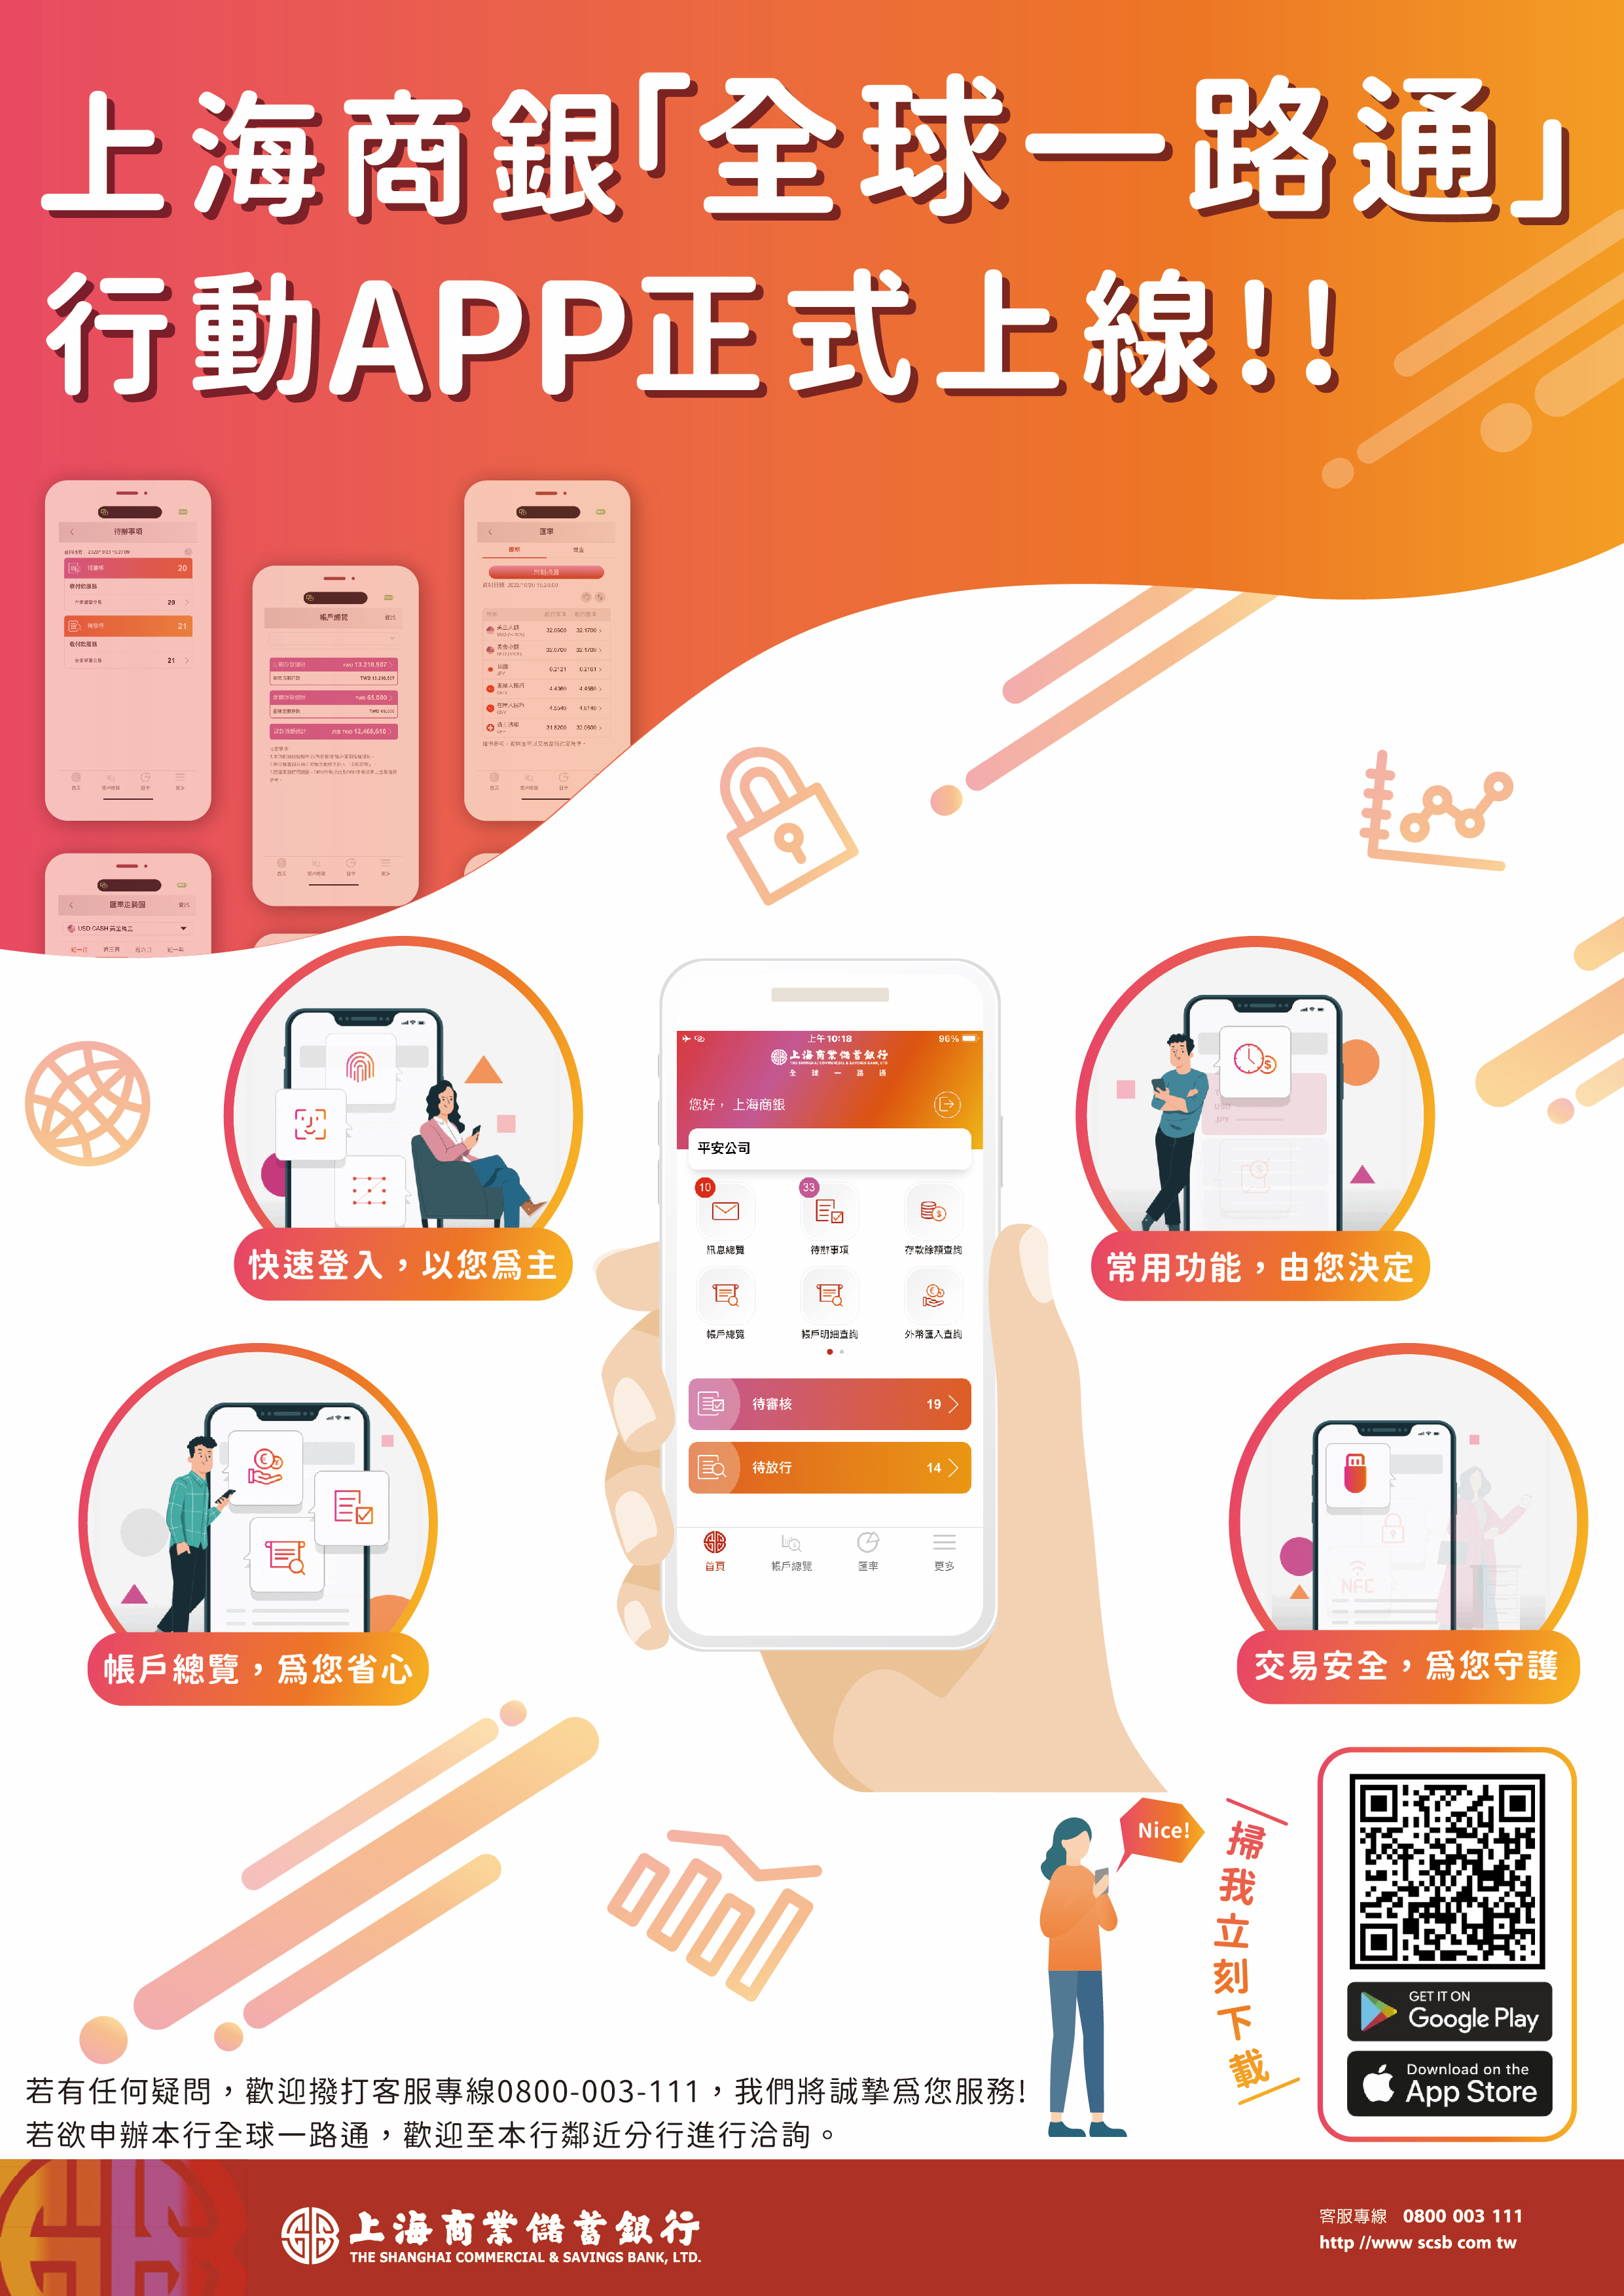 上海商銀企業網路銀行行動APP 正式上線!